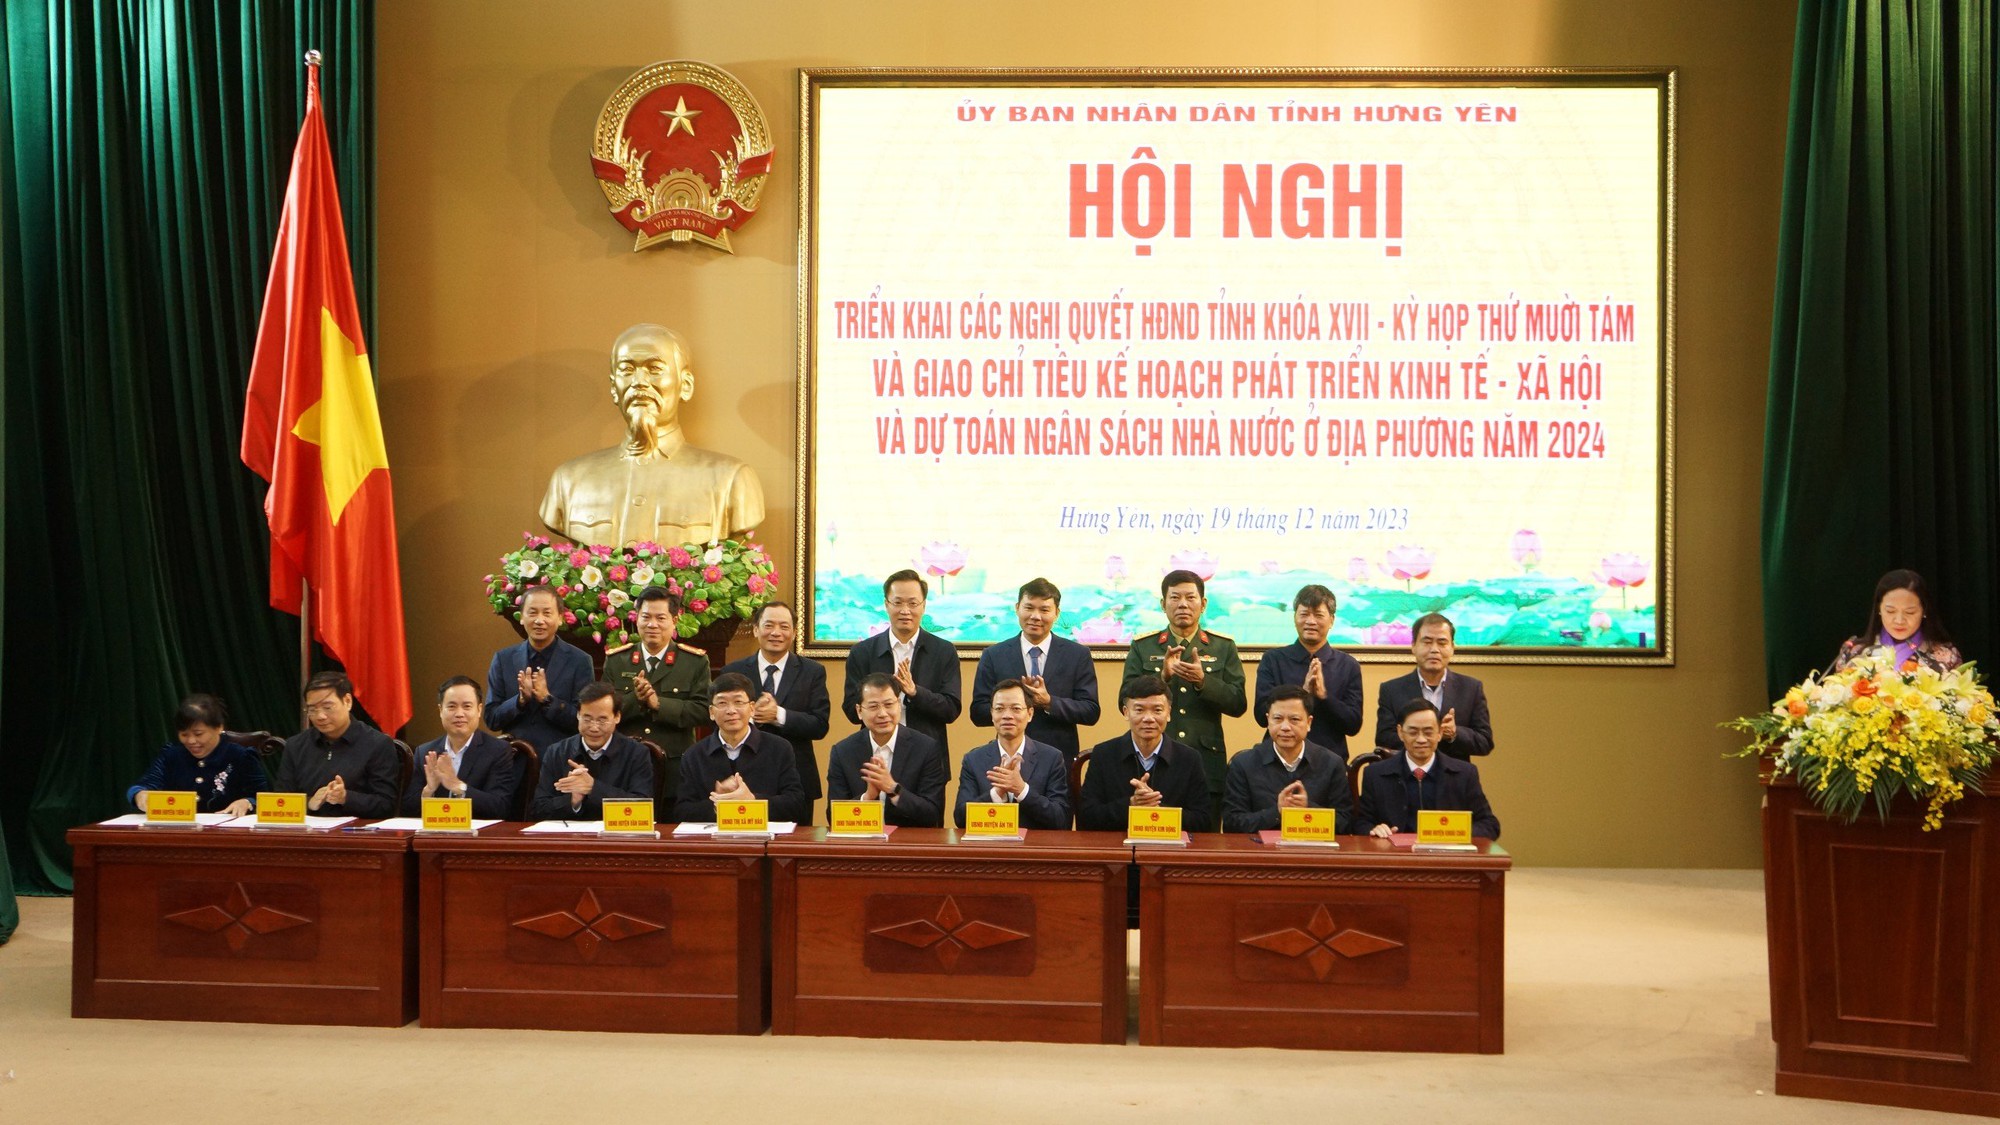 Ủy ban nhân dân tỉnh Hưng Yên giao chỉ tiêu kế hoạch phát triển kinh tế- Ảnh 2.